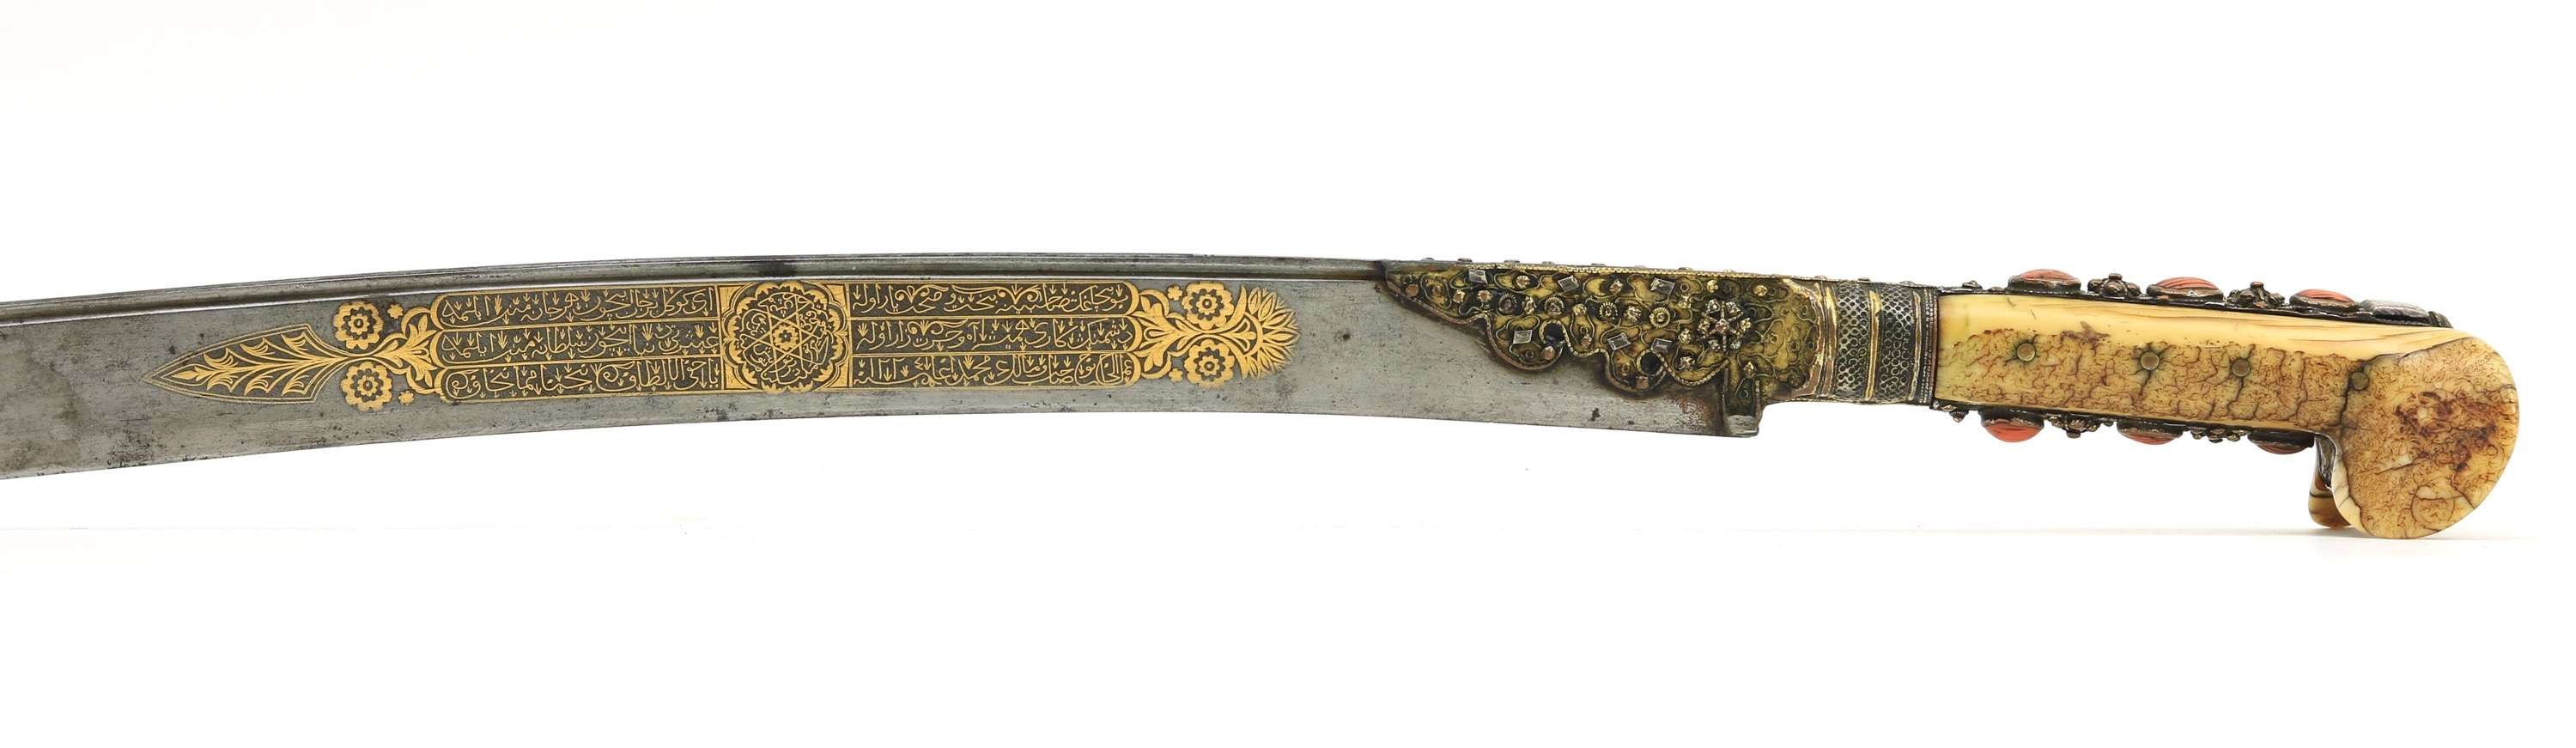 Fine Ottoman yatagan dated 1809